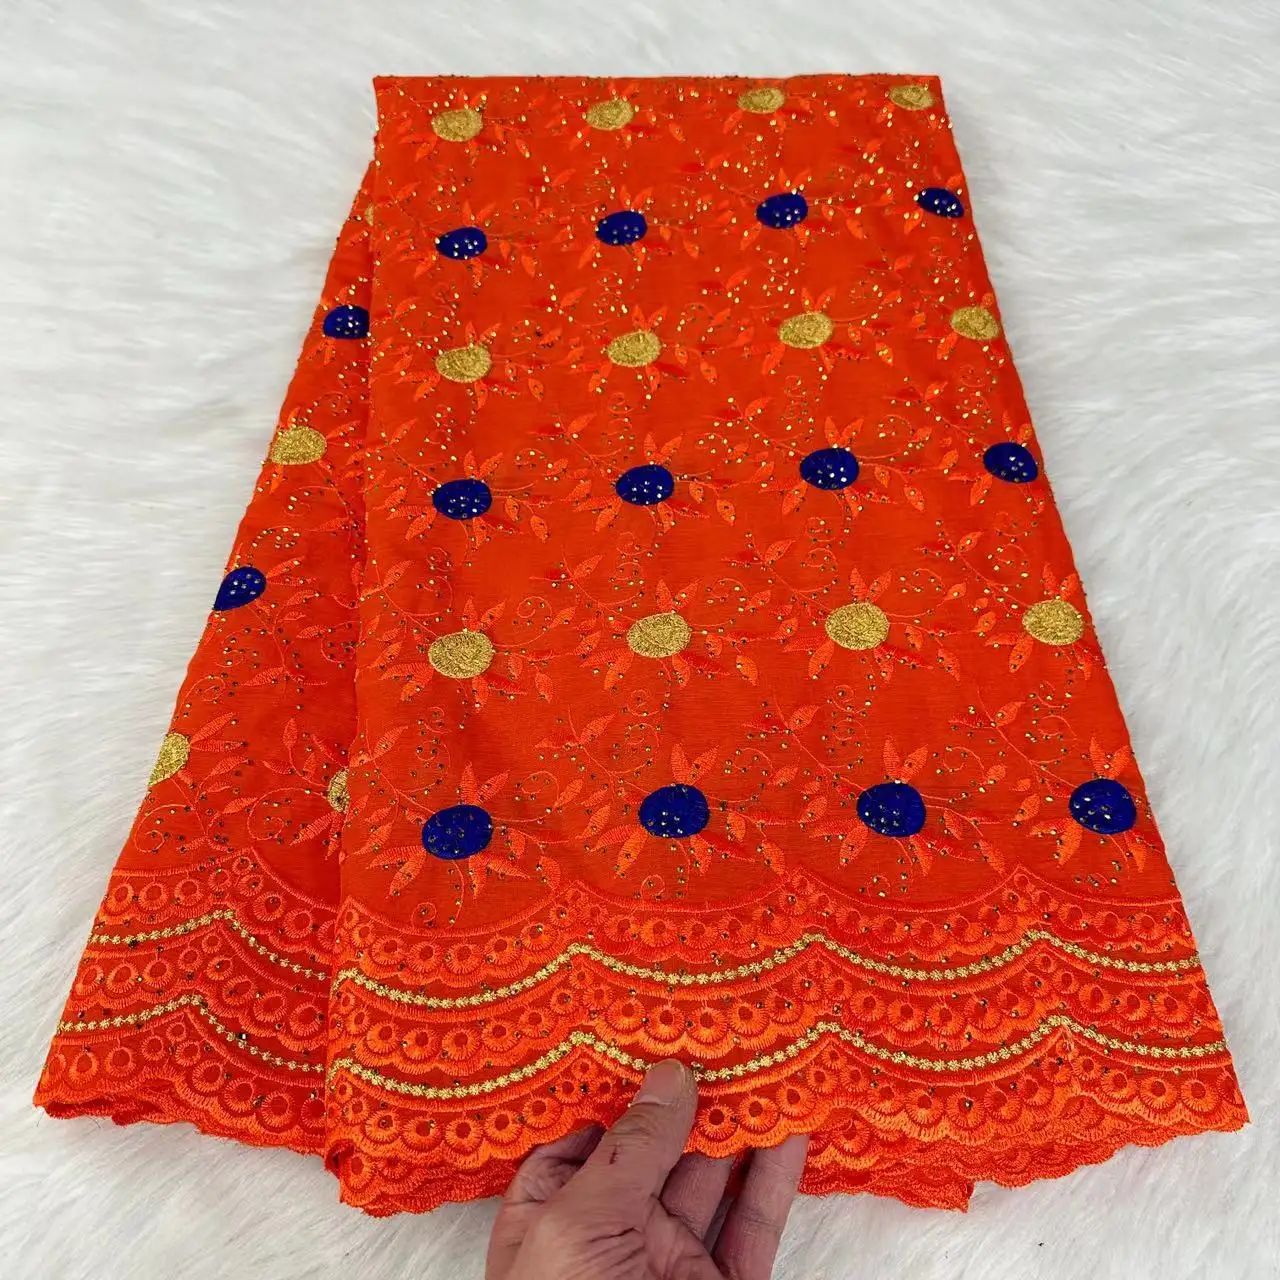 Nueva tela de encaje suizo de algodón 100% de alta calidad bordada tela de encaje africano tela de encaje de gasa Suiza africana